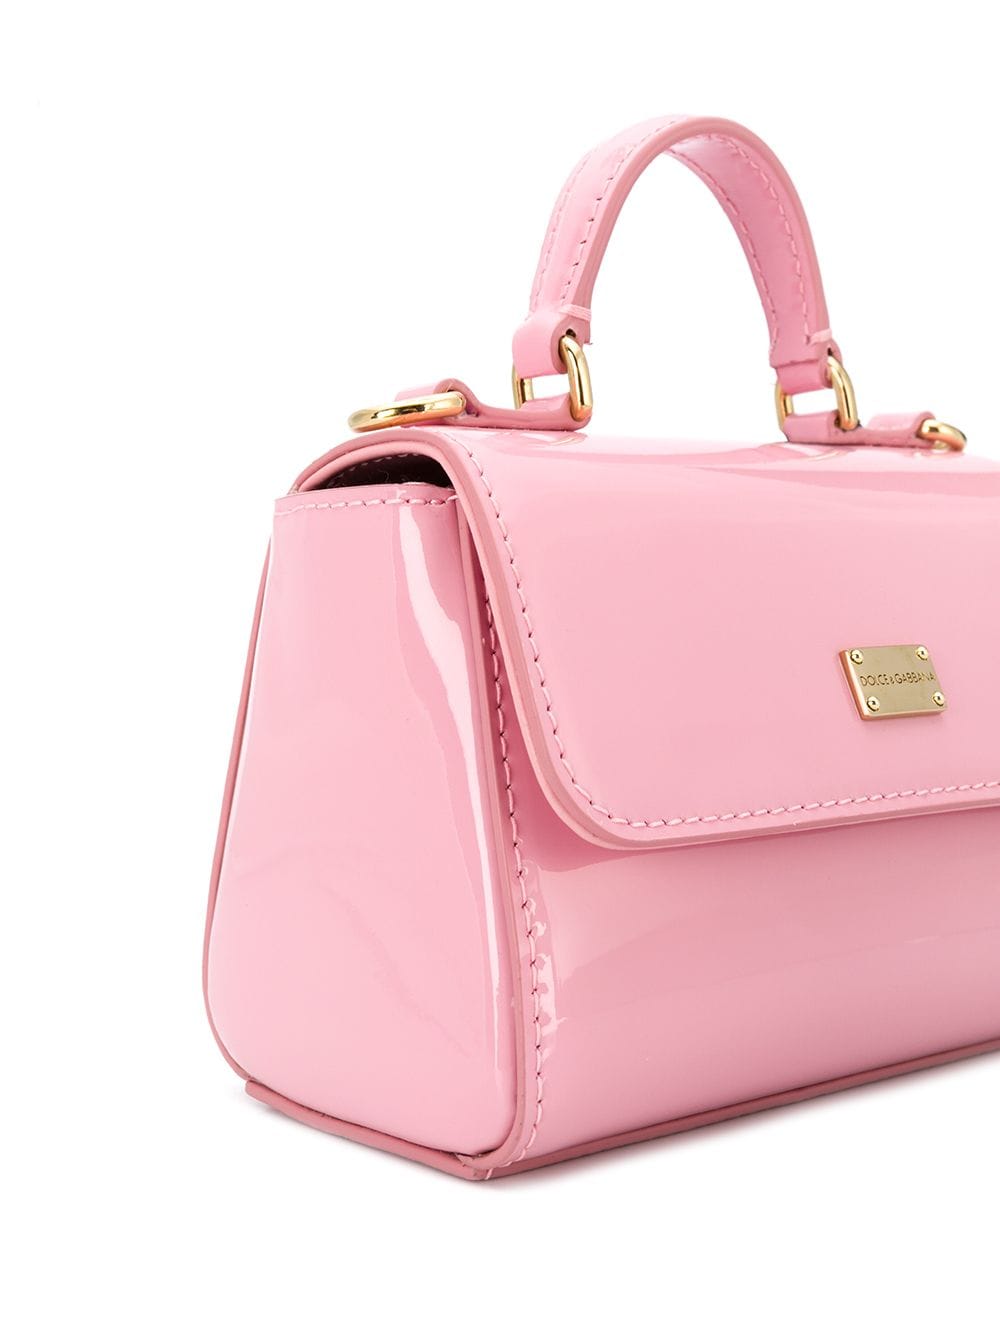 Dolce & Gabbana Kids - Pink Patent Leather Shoulder Bag